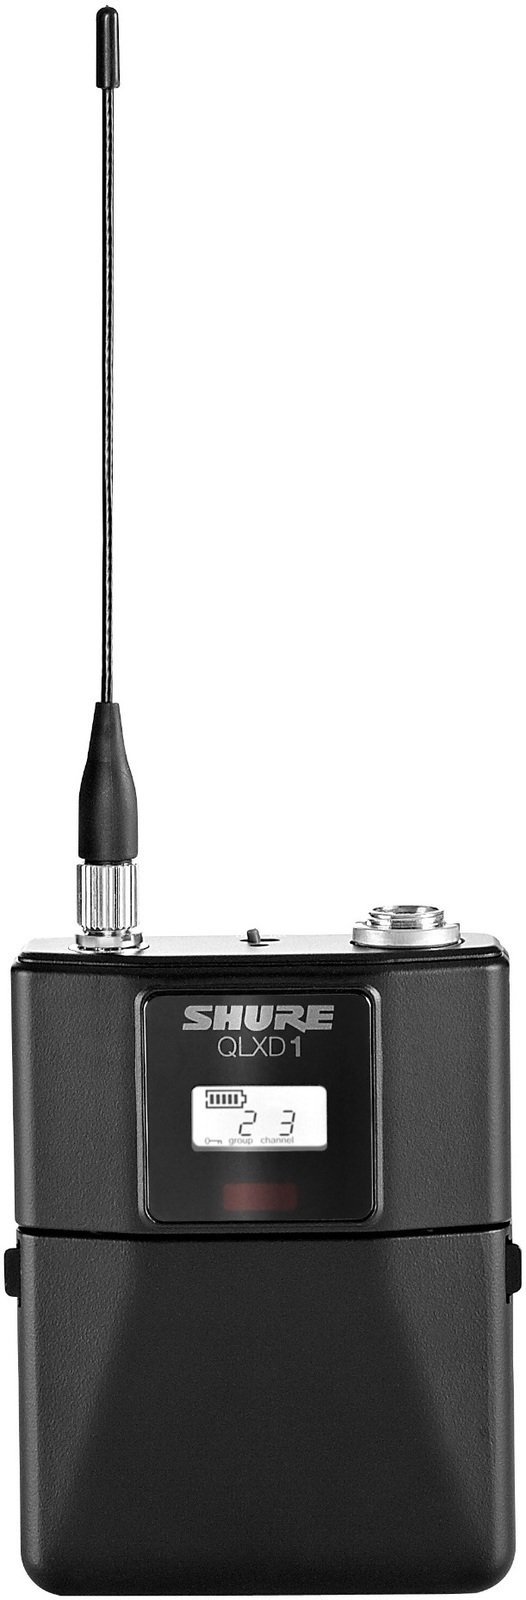 Transmitter voor draadloze systemen Shure QLXD1 G51: 470-534 MHz